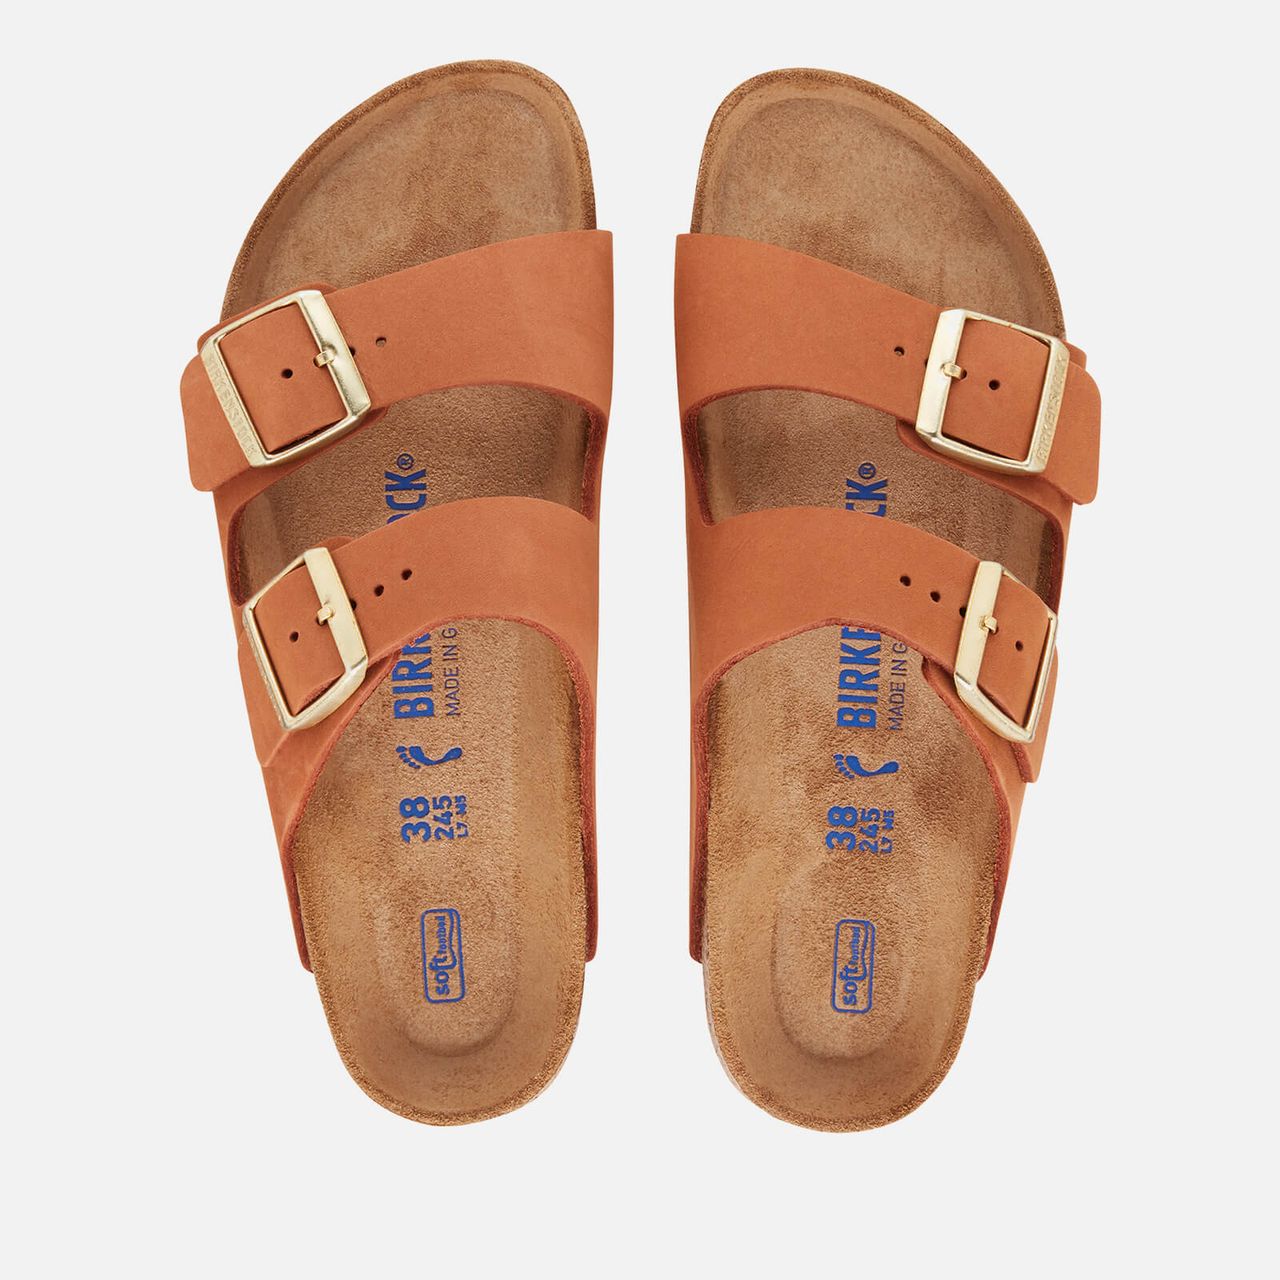 Birkenstock Women's Arizona Slim Fit Sfb Suede Double Strap Sandals - Pecan - EU 36/UK 3.5